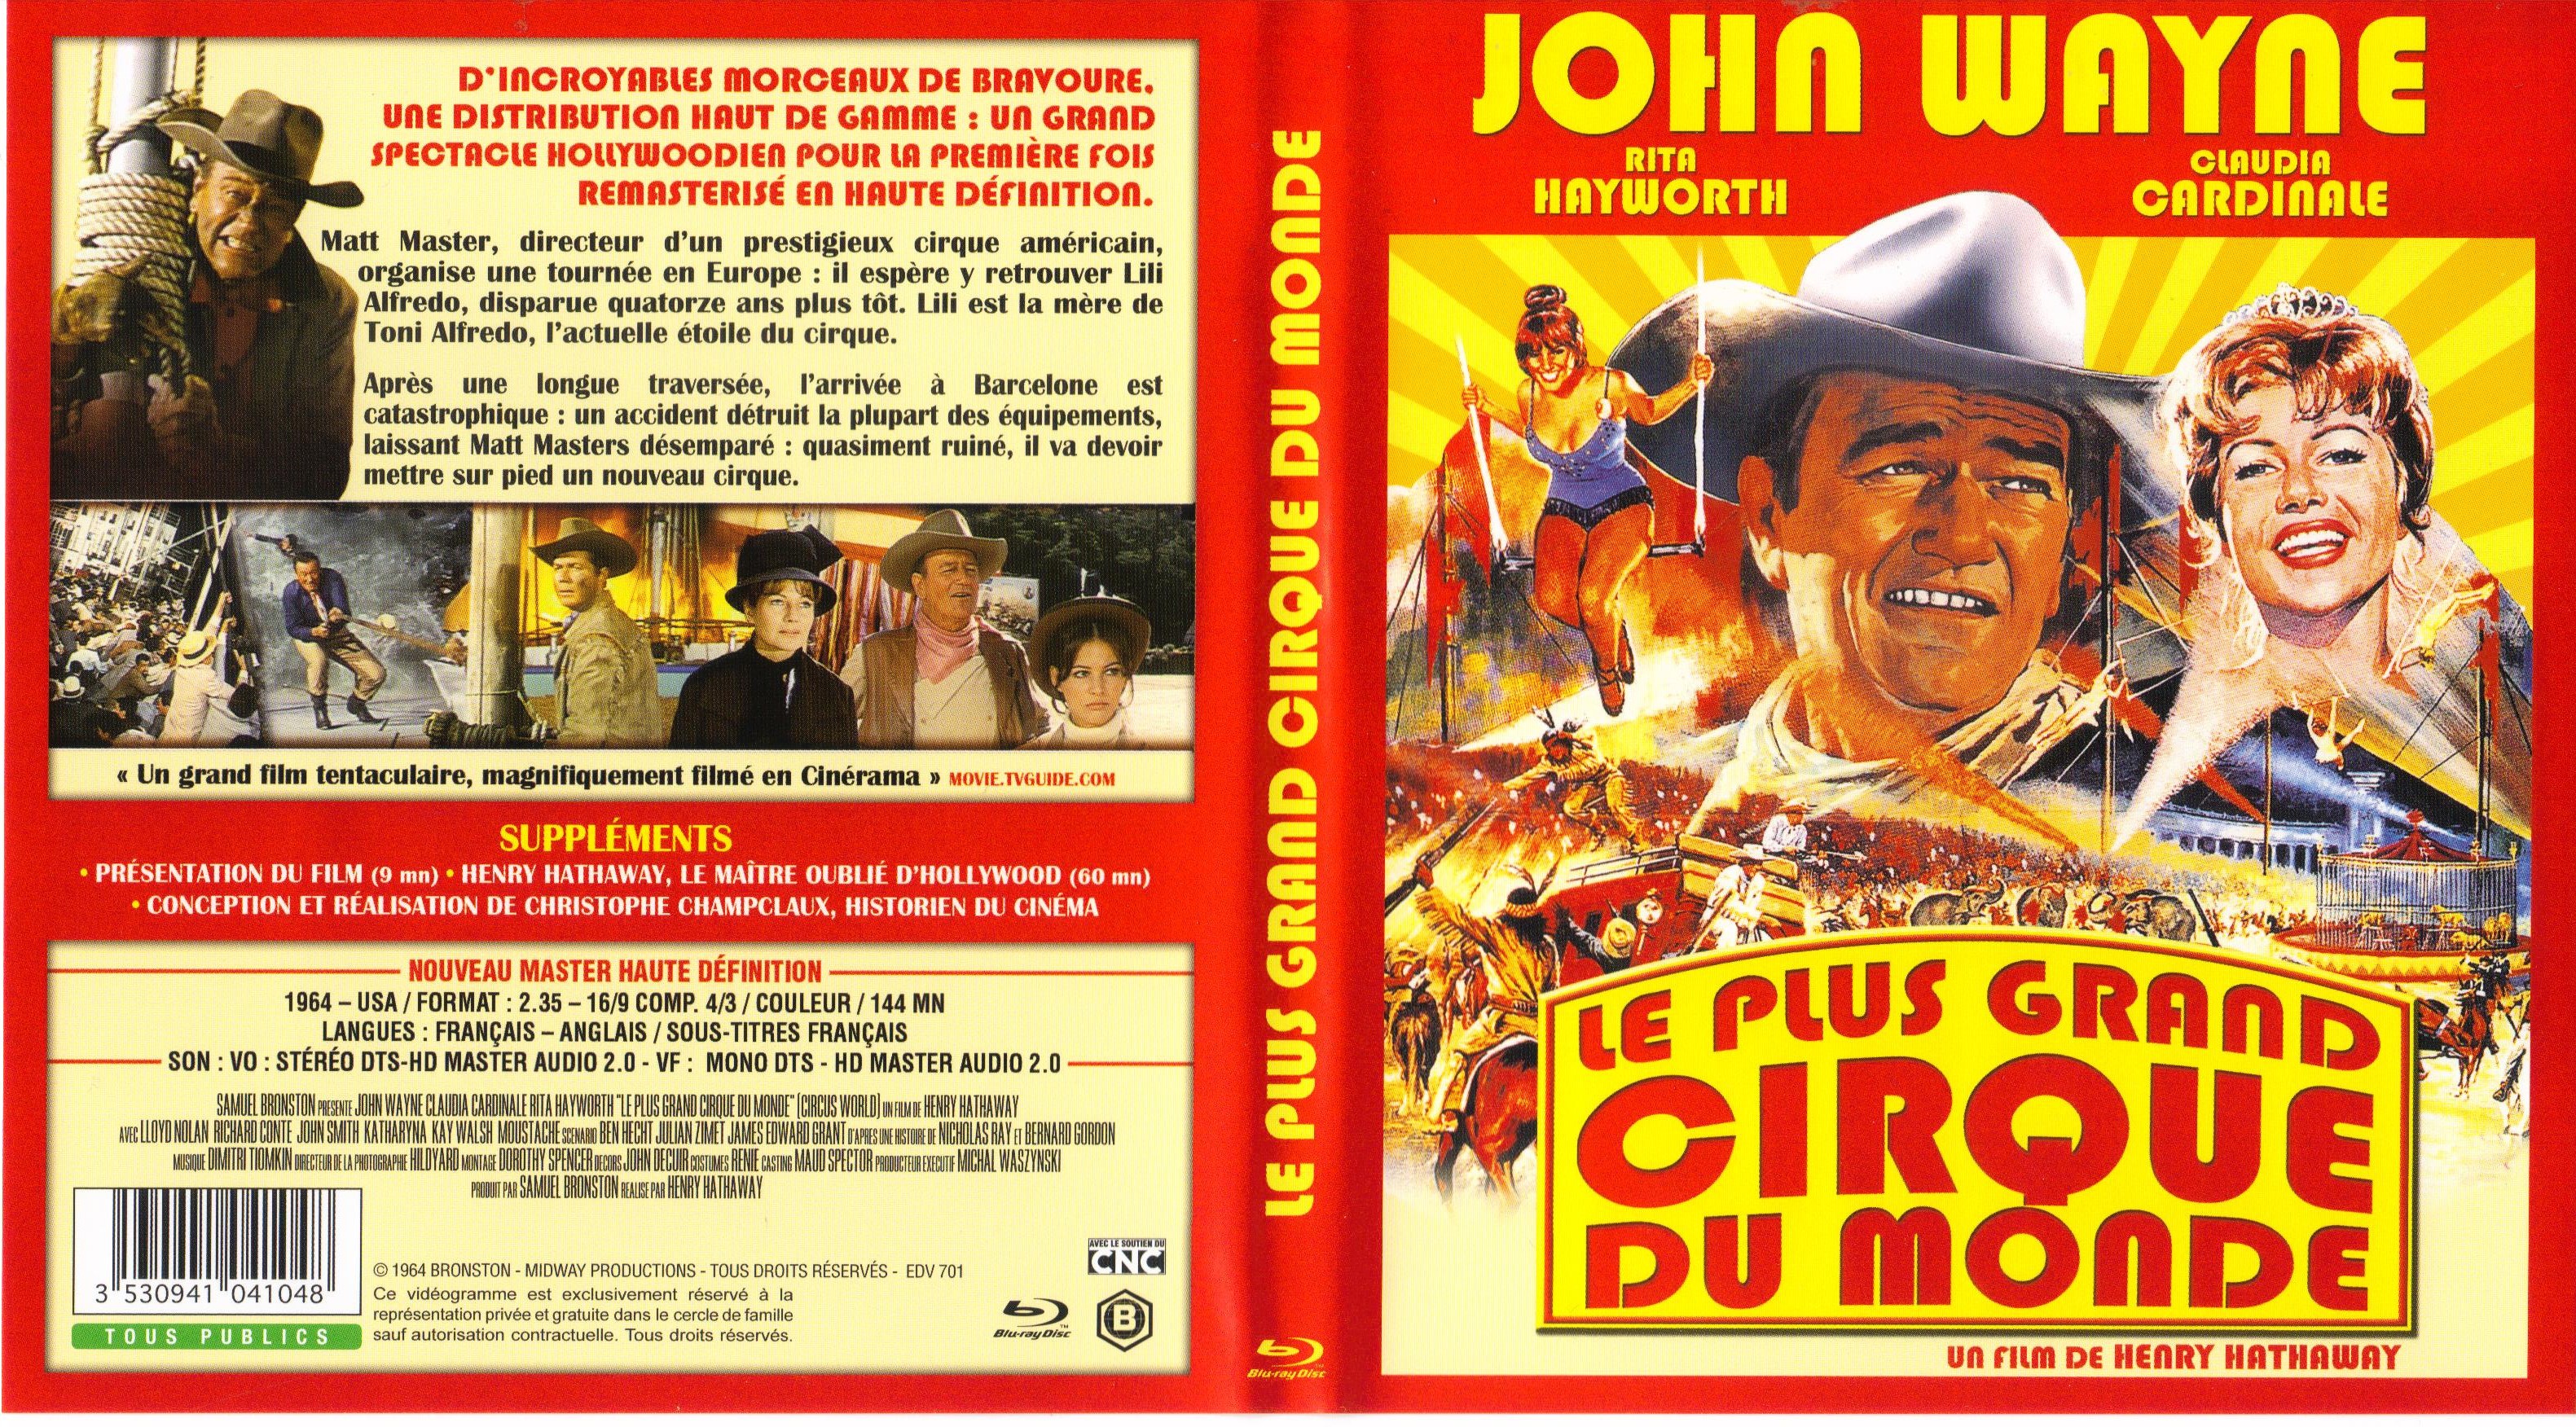 Jaquette DVD Le Plus Grand Cirque du monde (BLU-RAY)